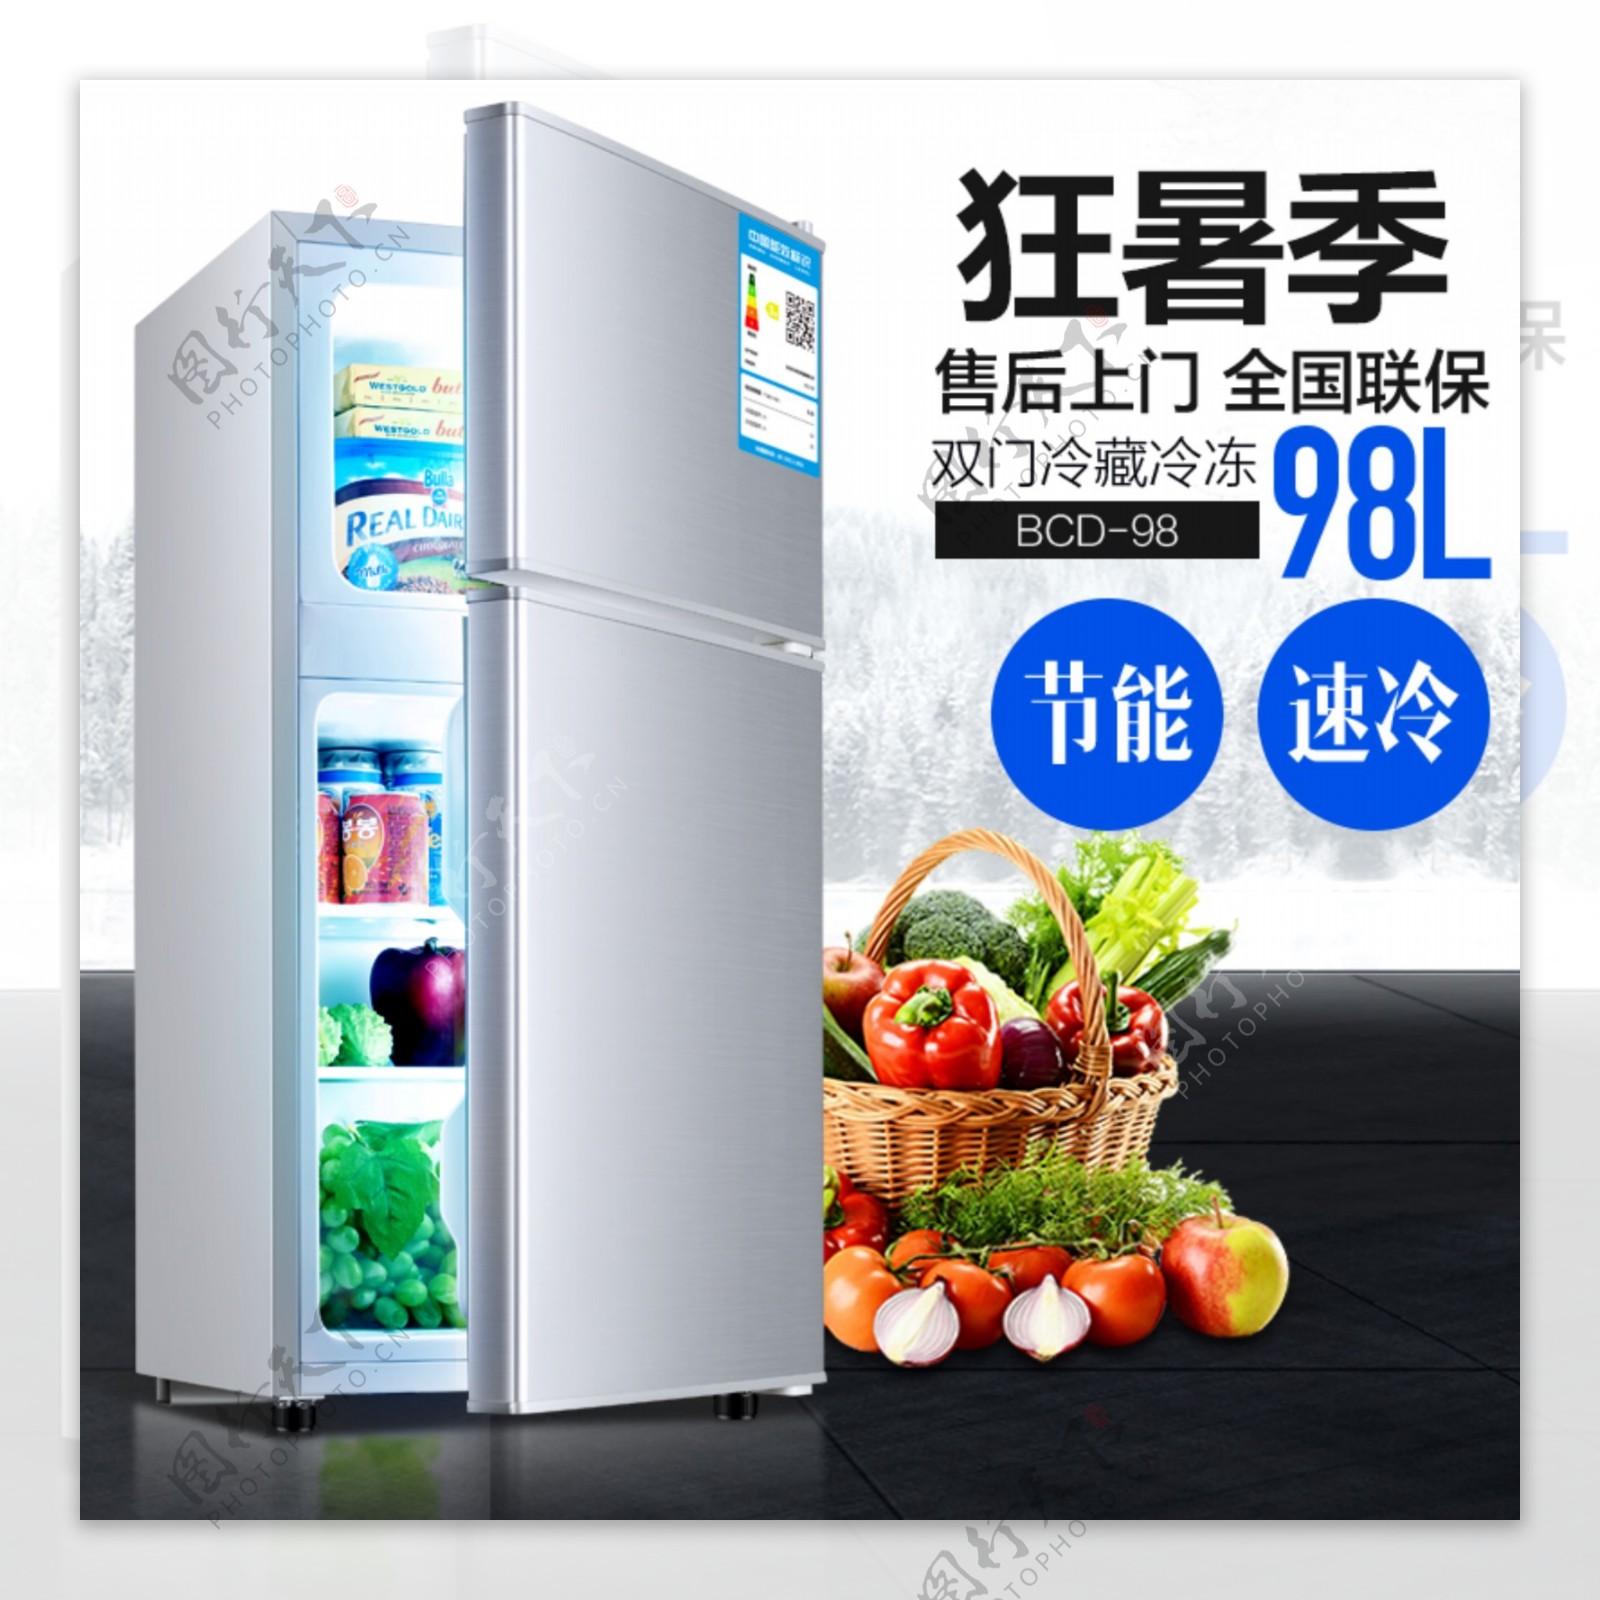 电商通用简约清凉风格狂暑季家用电器小冰箱